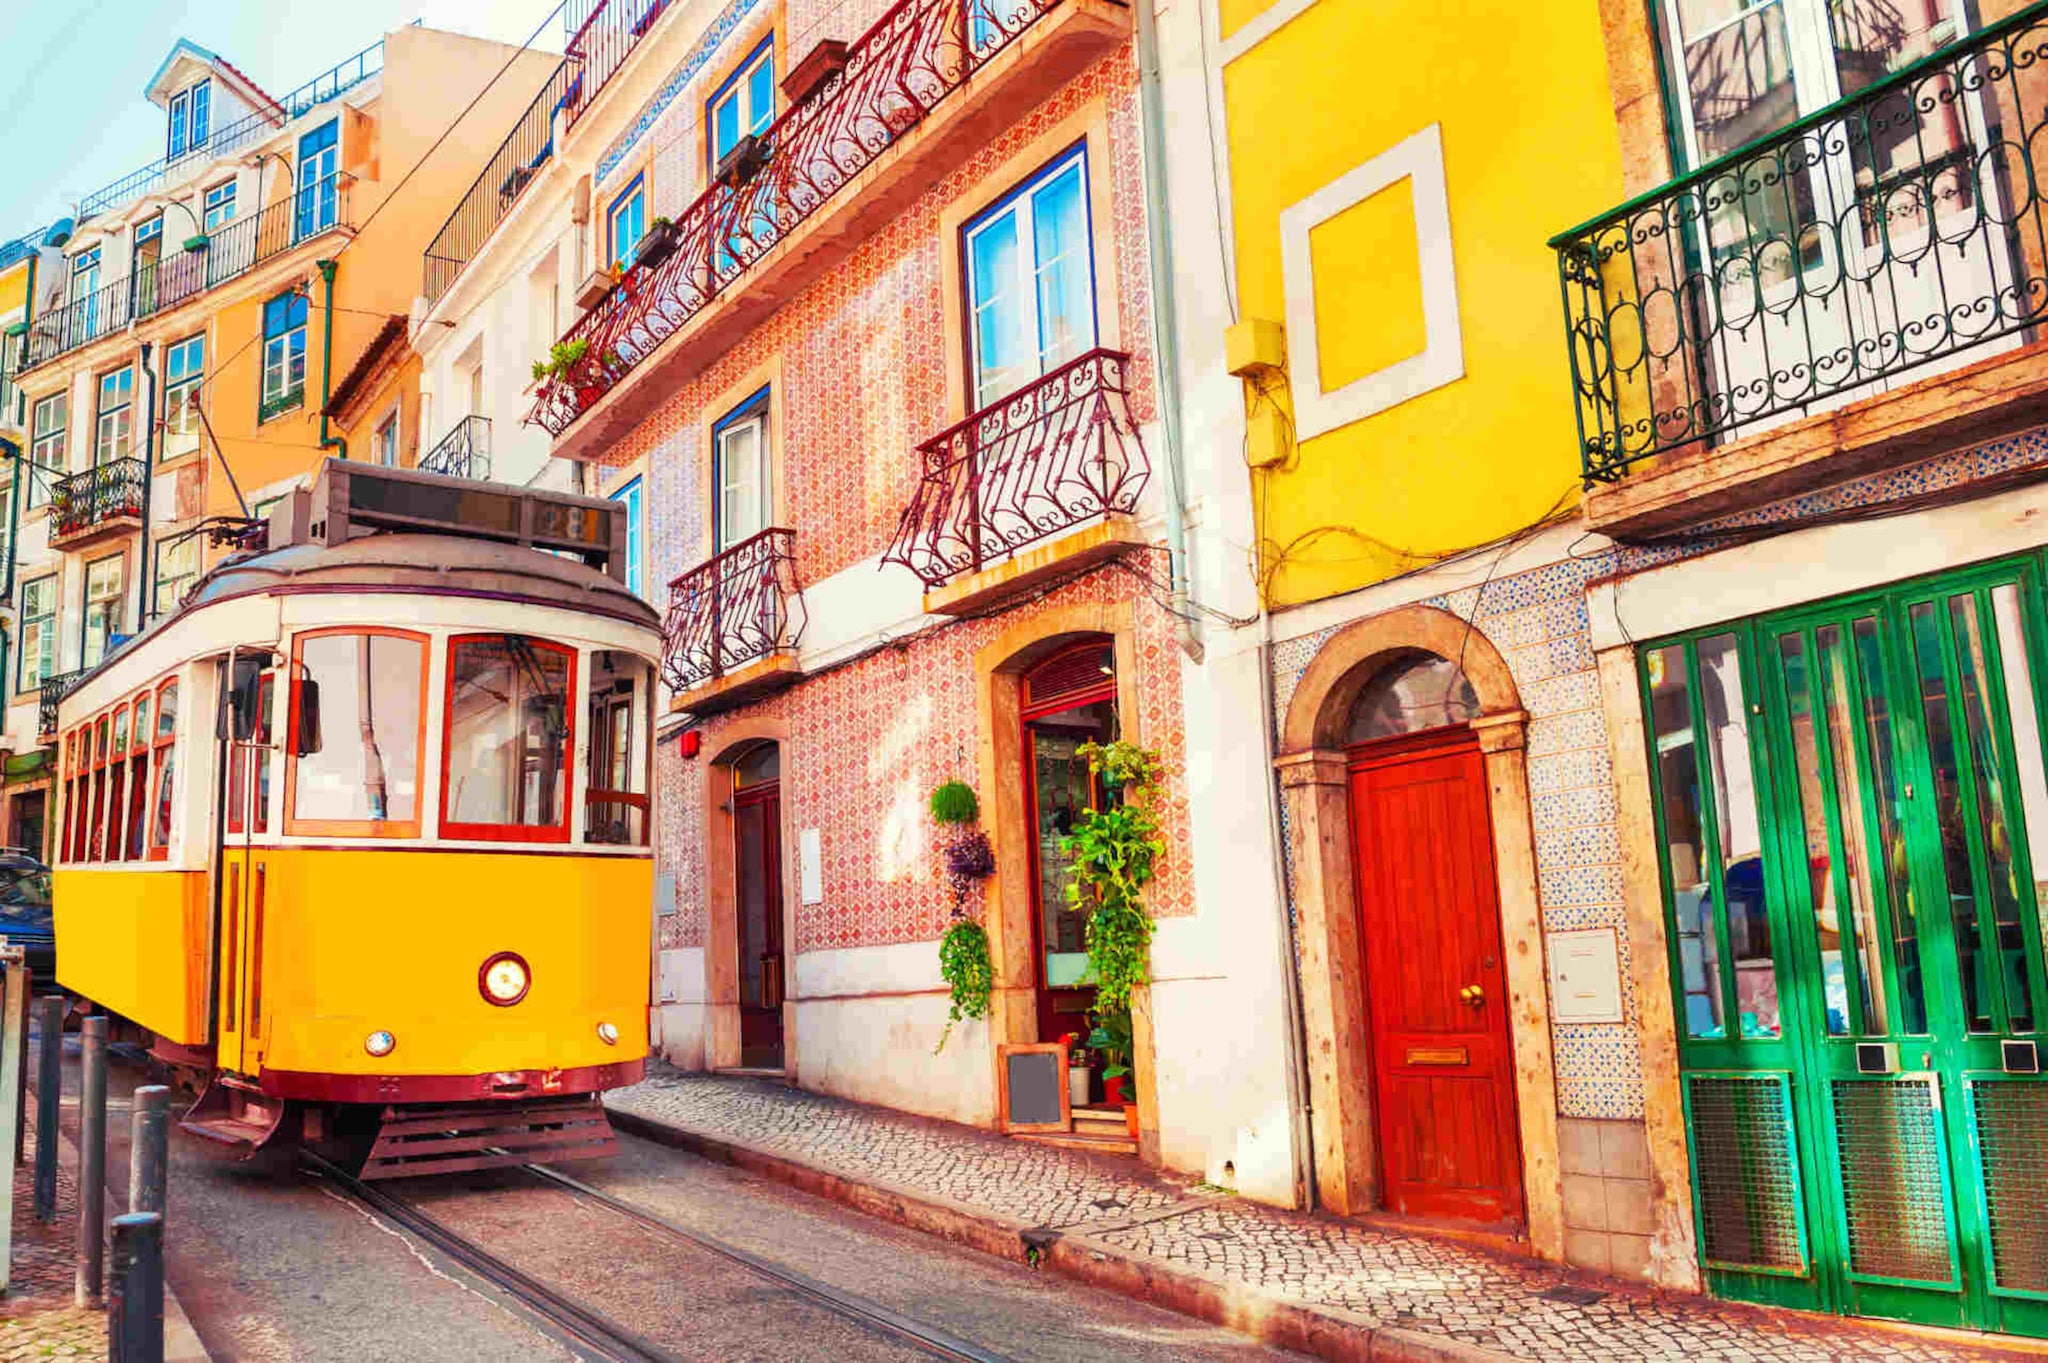 Cose da vedere a Lisbona: foto di tram Lisbona